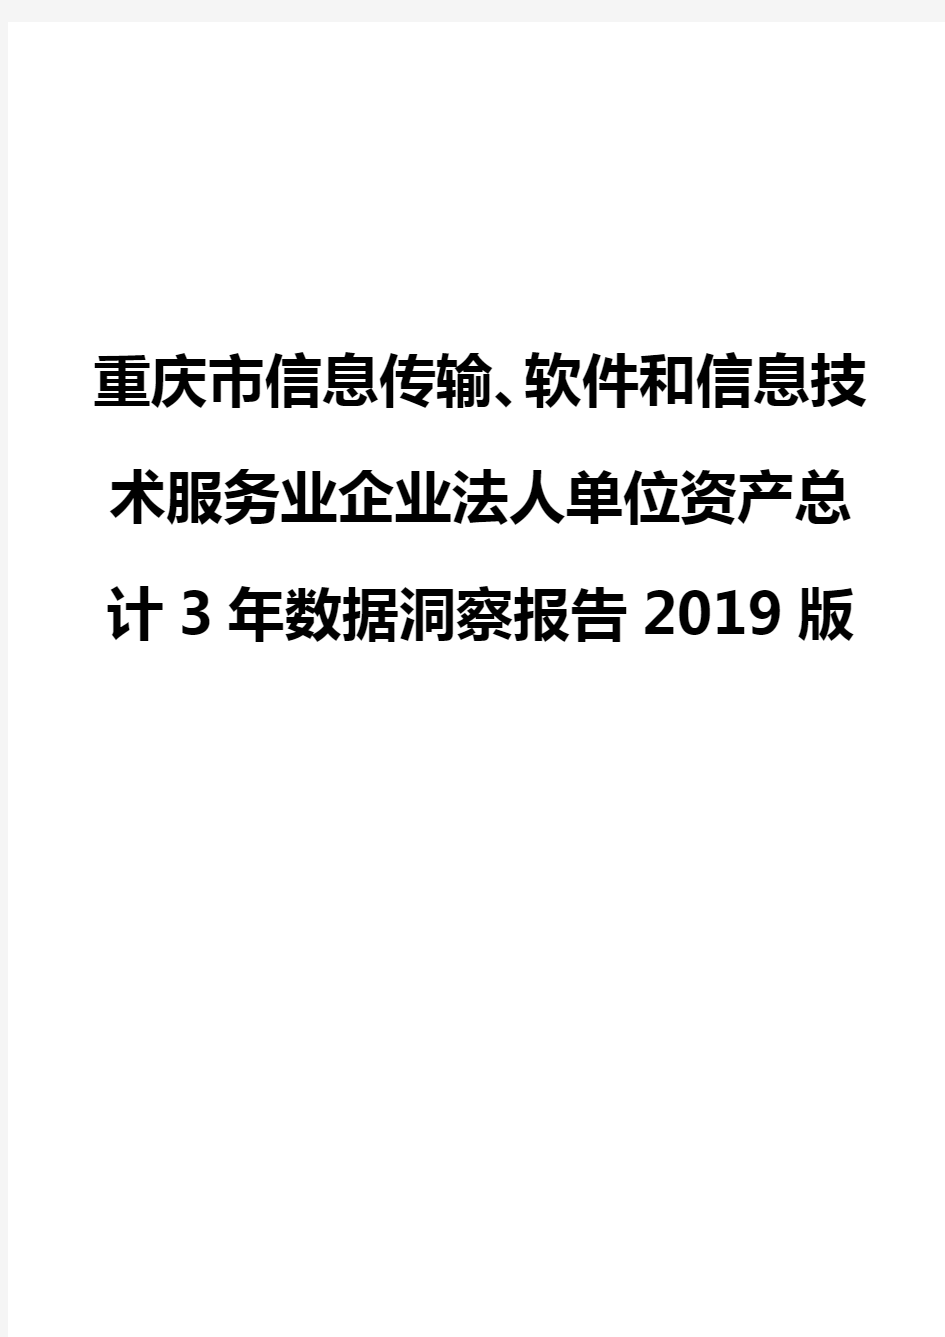 重庆市信息传输、软件和信息技术服务业企业法人单位资产总计3年数据洞察报告2019版